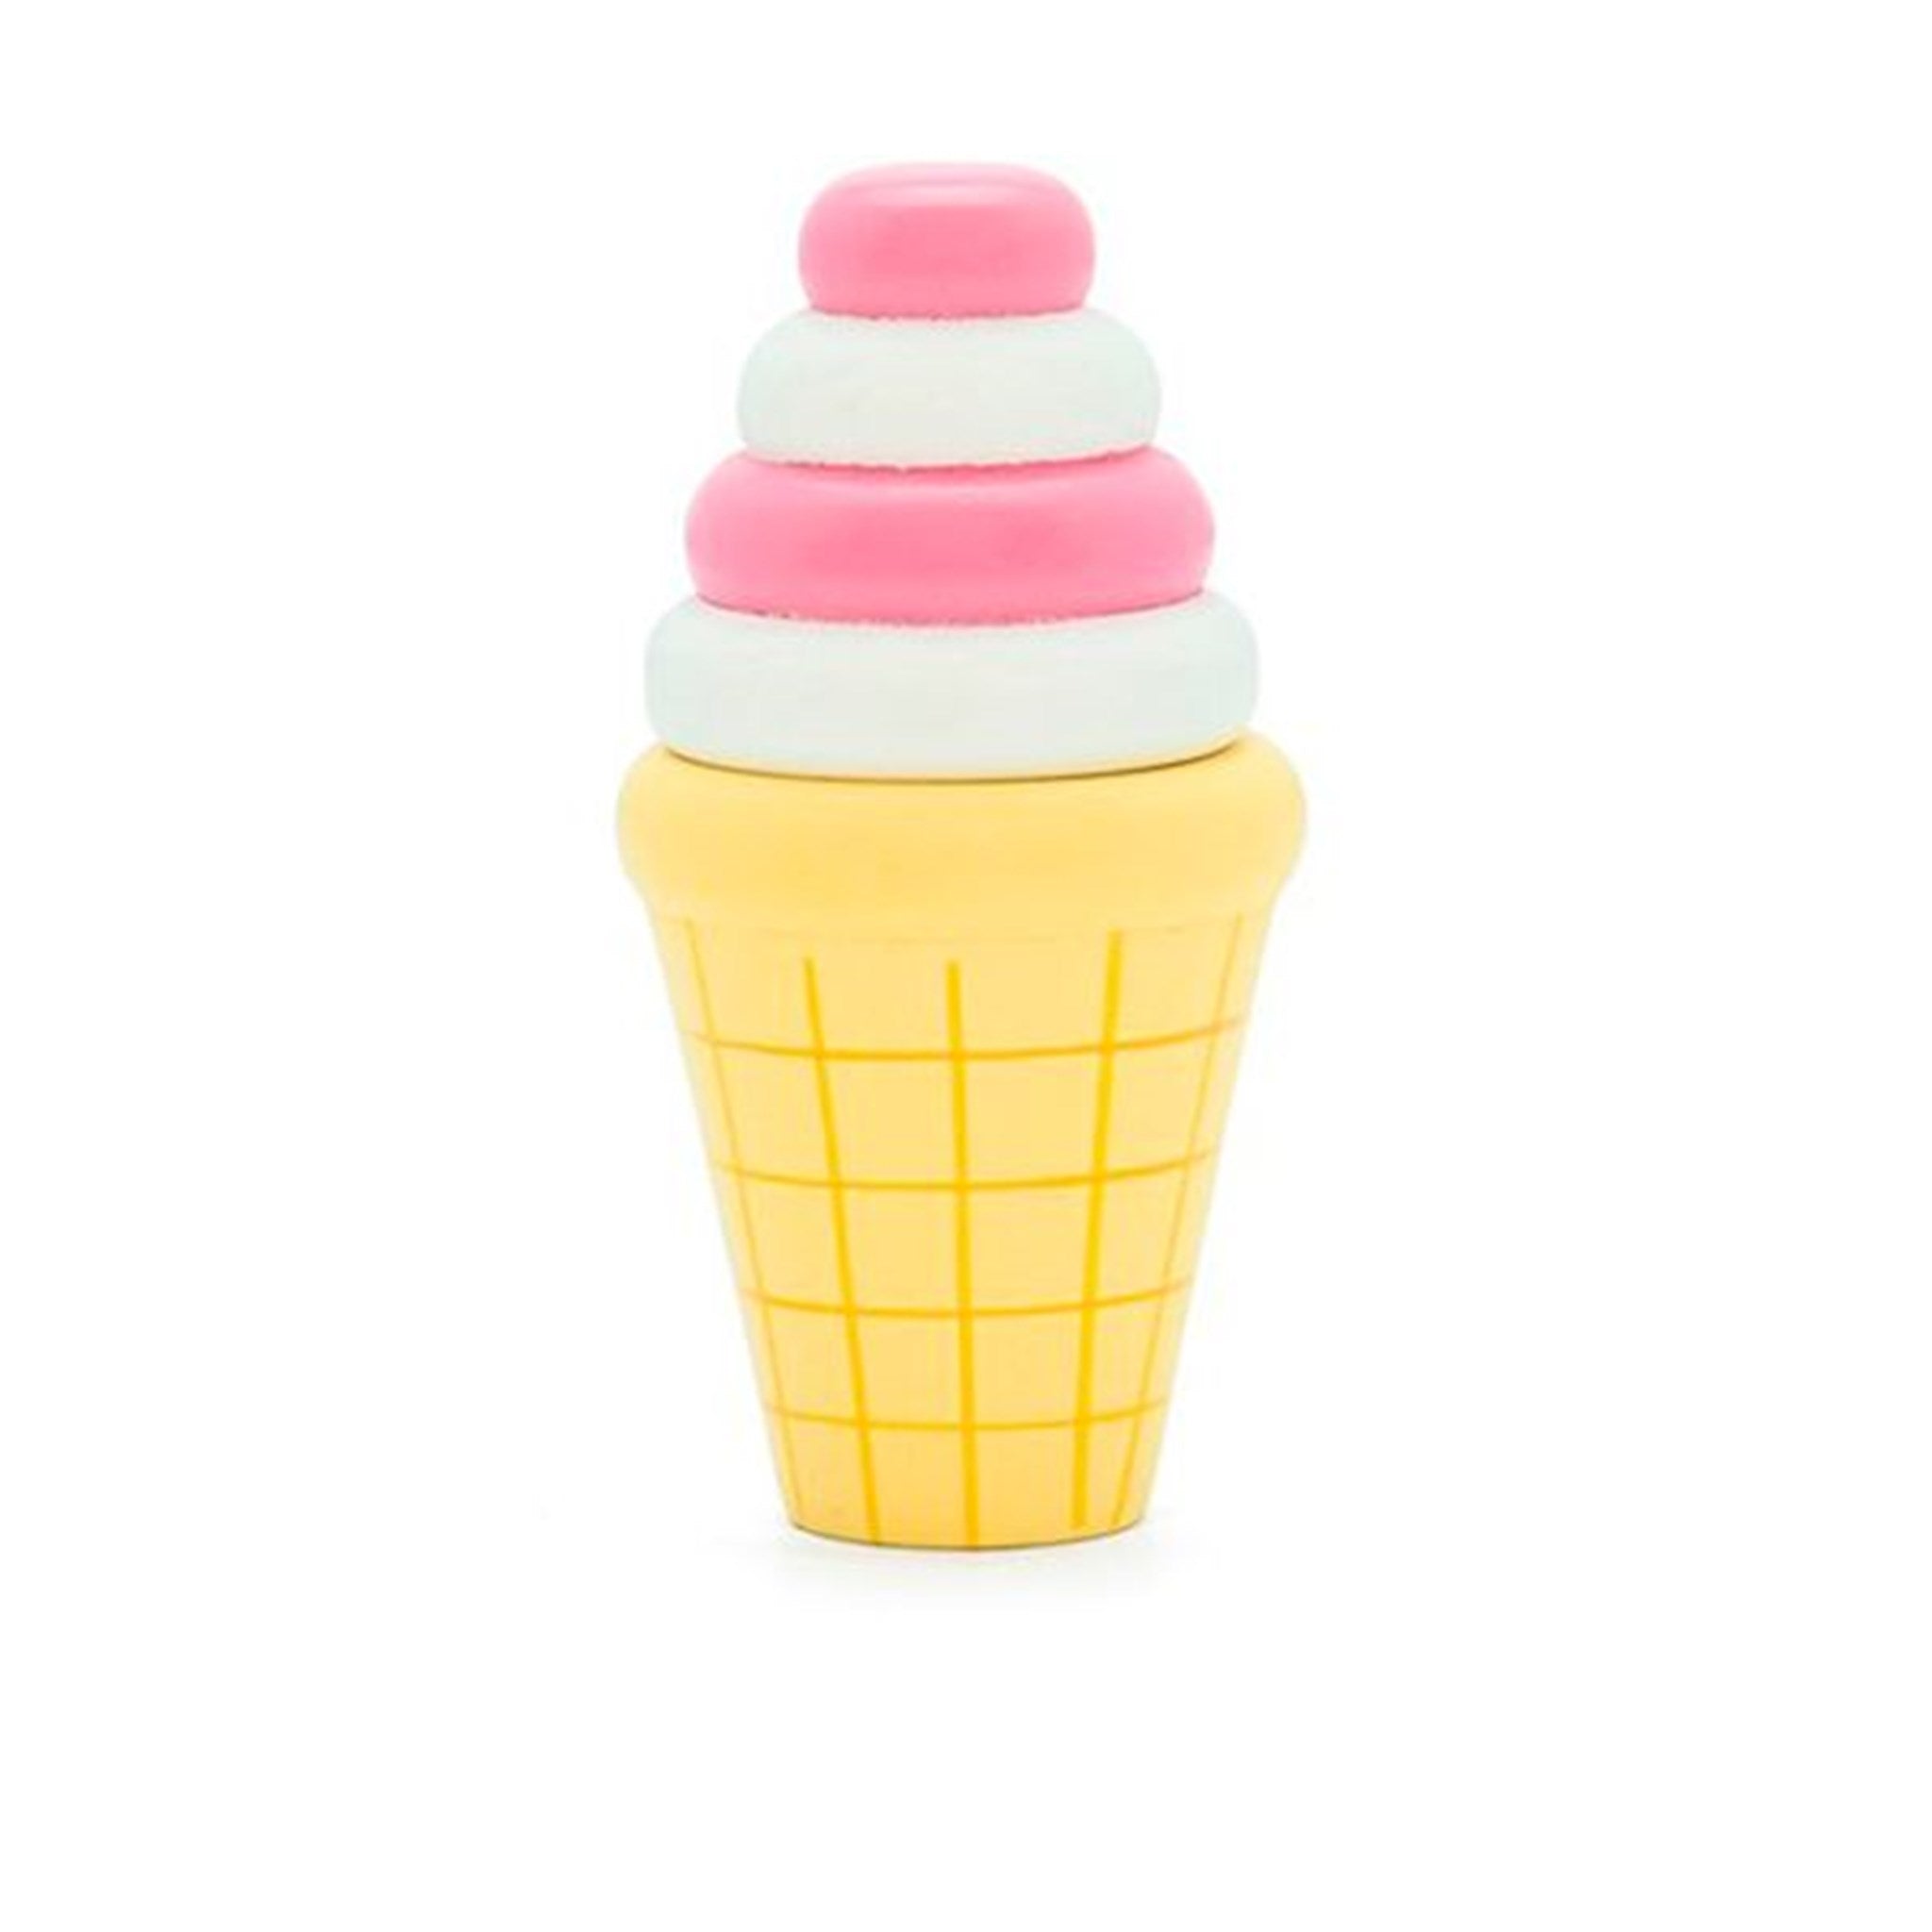 MaMaMemo Ice Cream Cone Strawberry/Vanilla